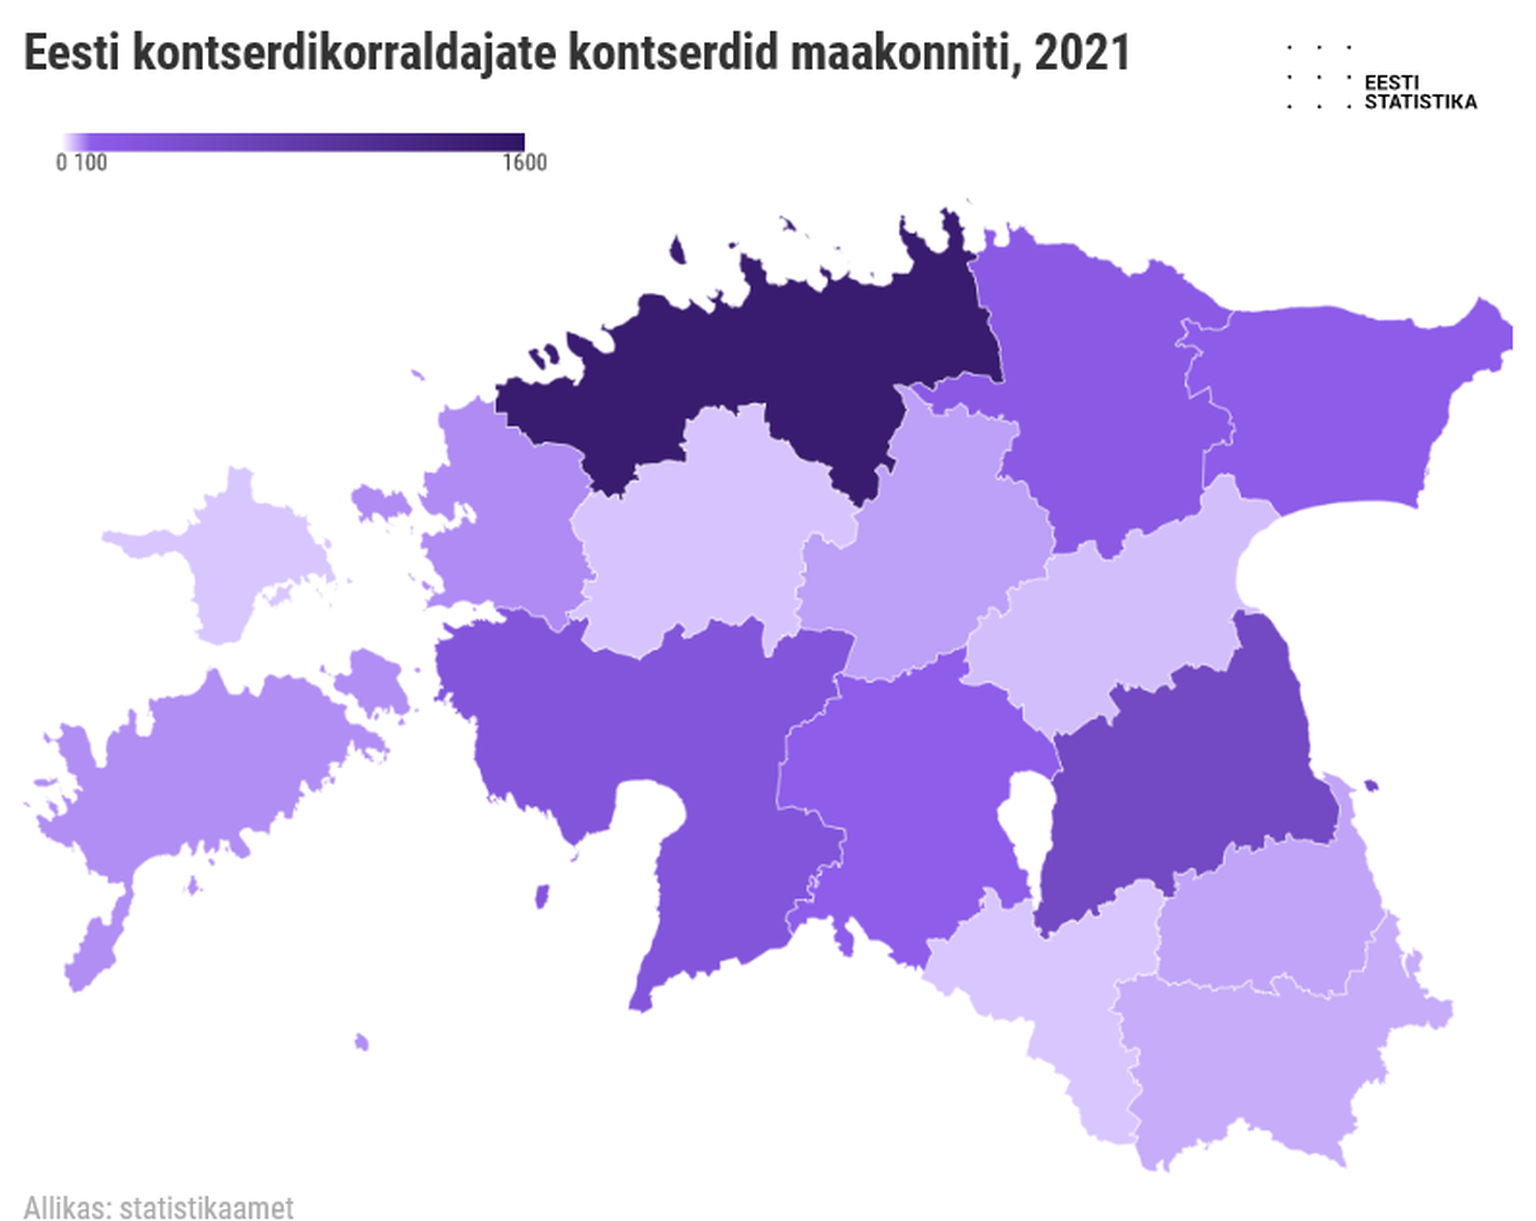 Eesti kontserdikorraldajate kontserdid maakonniti 2021. aastal